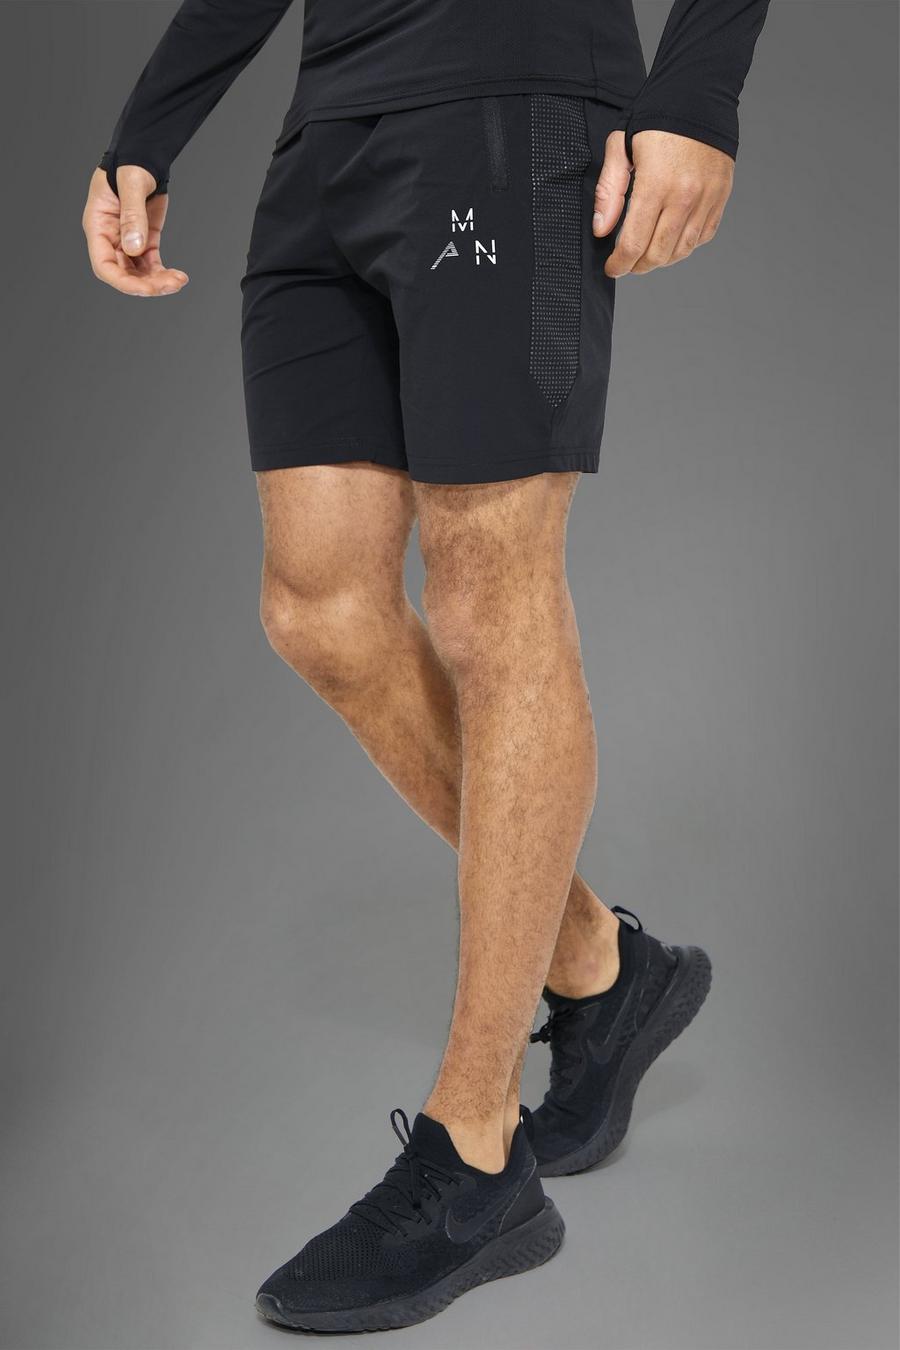 Pantalón corto MAN Active deportivo con panel reflectante, Black